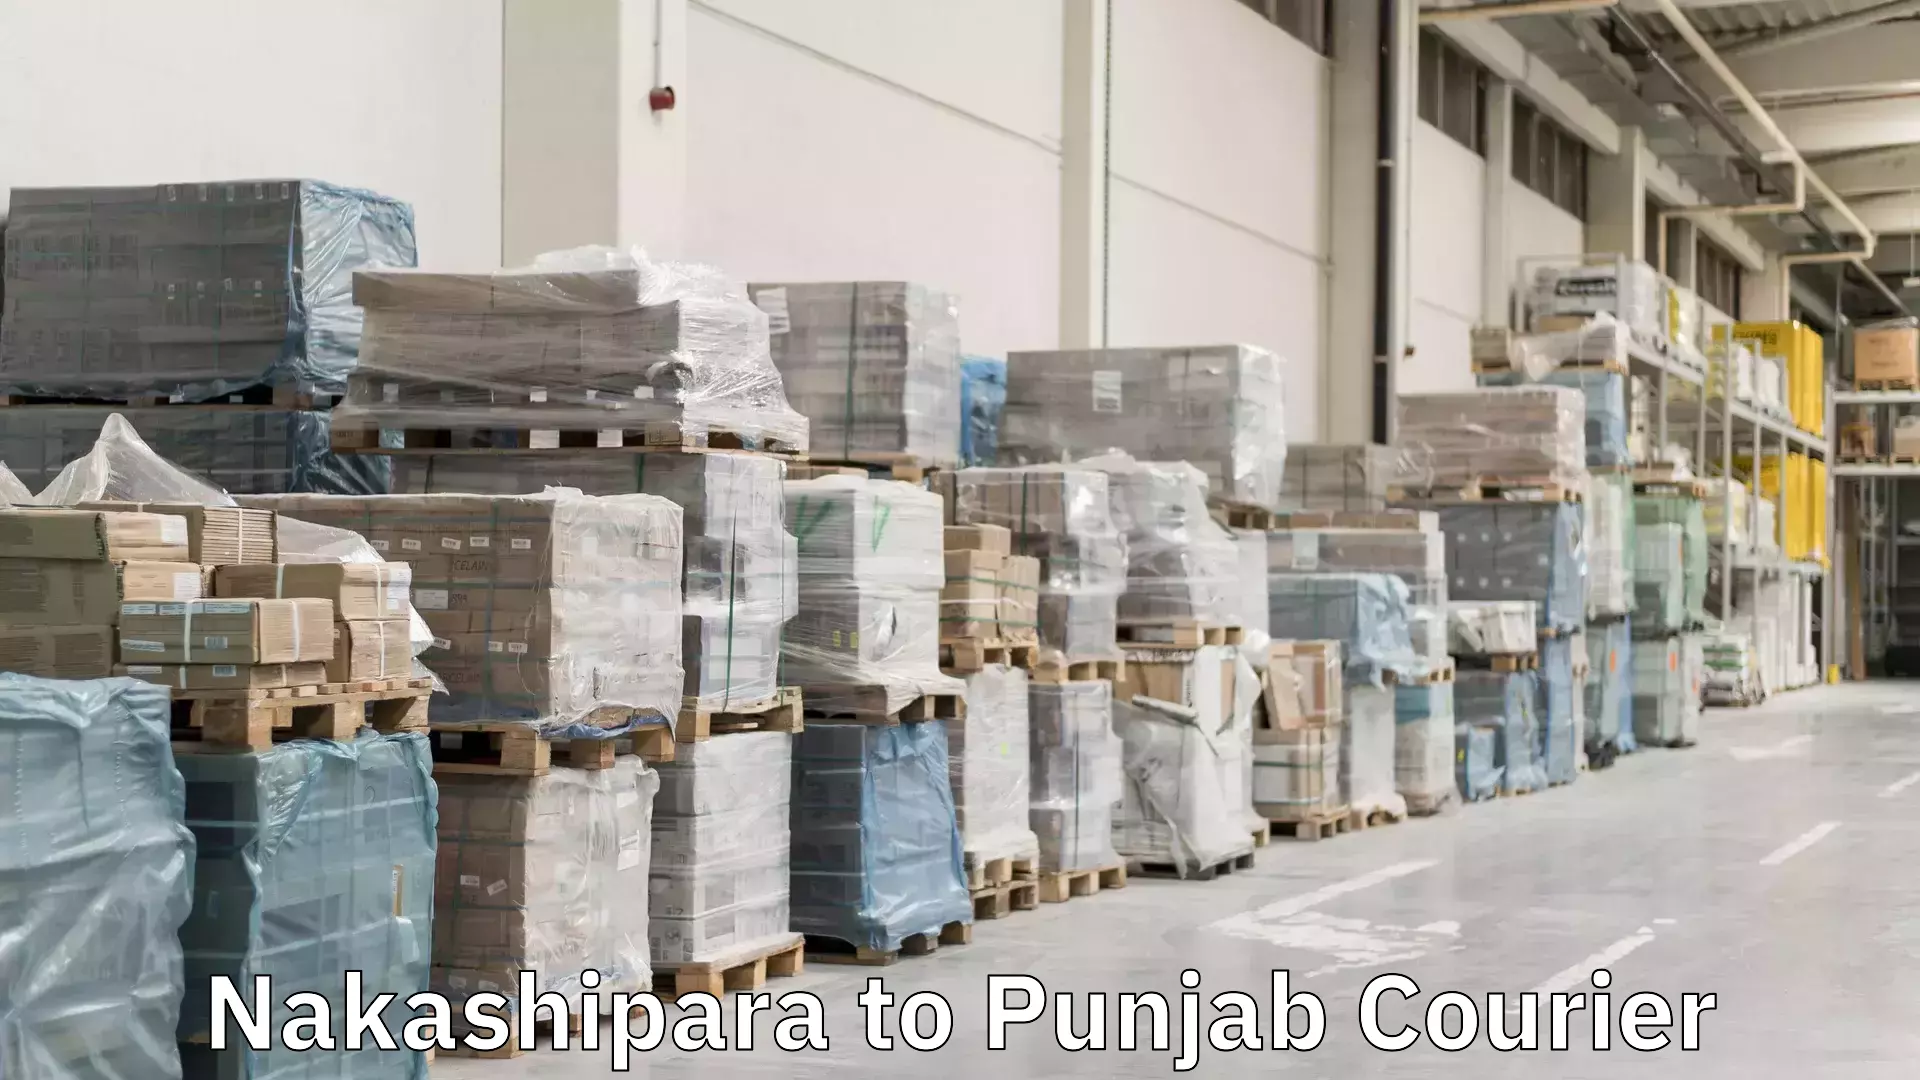 Express delivery solutions Nakashipara to Punjab